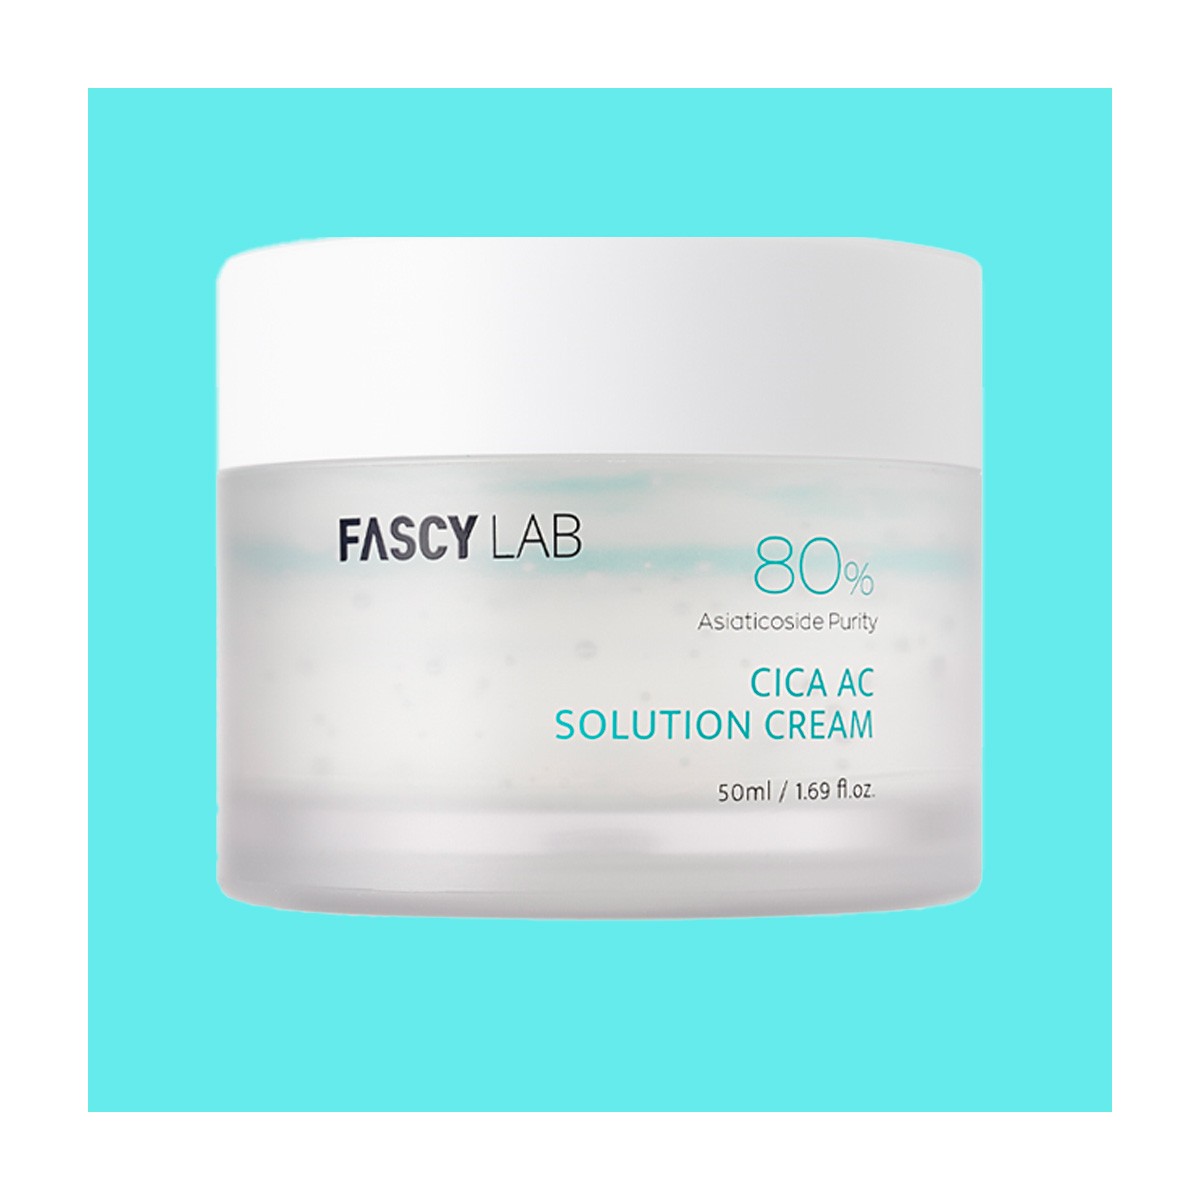 Emulsiones y Cremas al mejor precio: Cica AC Solution Cream - Crema para piel sensible y dañada de Fascy Lab en Skin Thinks - Piel Sensible